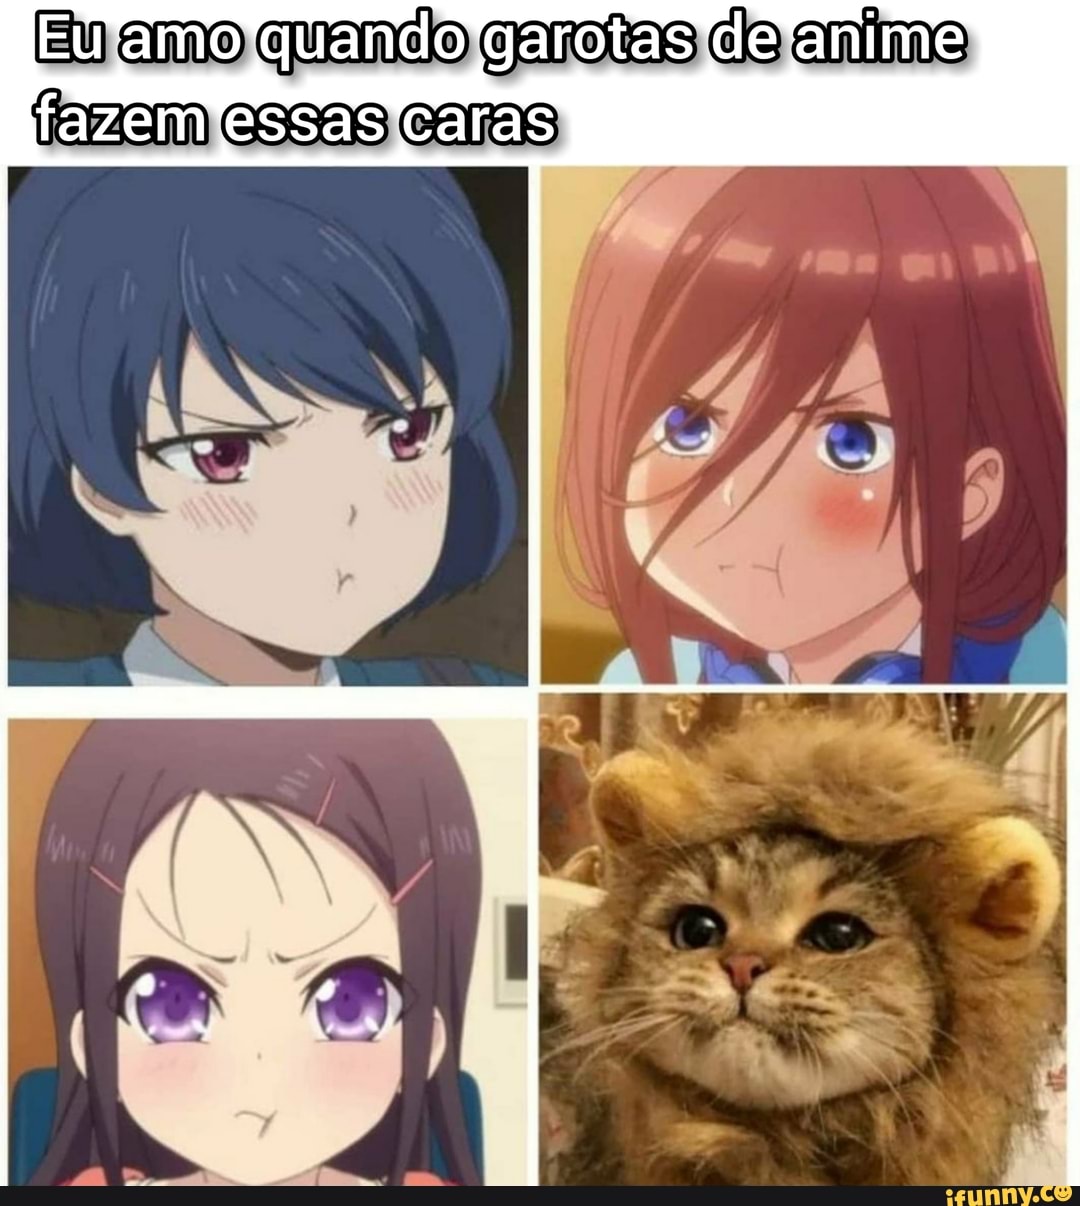 Eu amo esse anime  Anime meme, Memes engraçados, Memes hilários